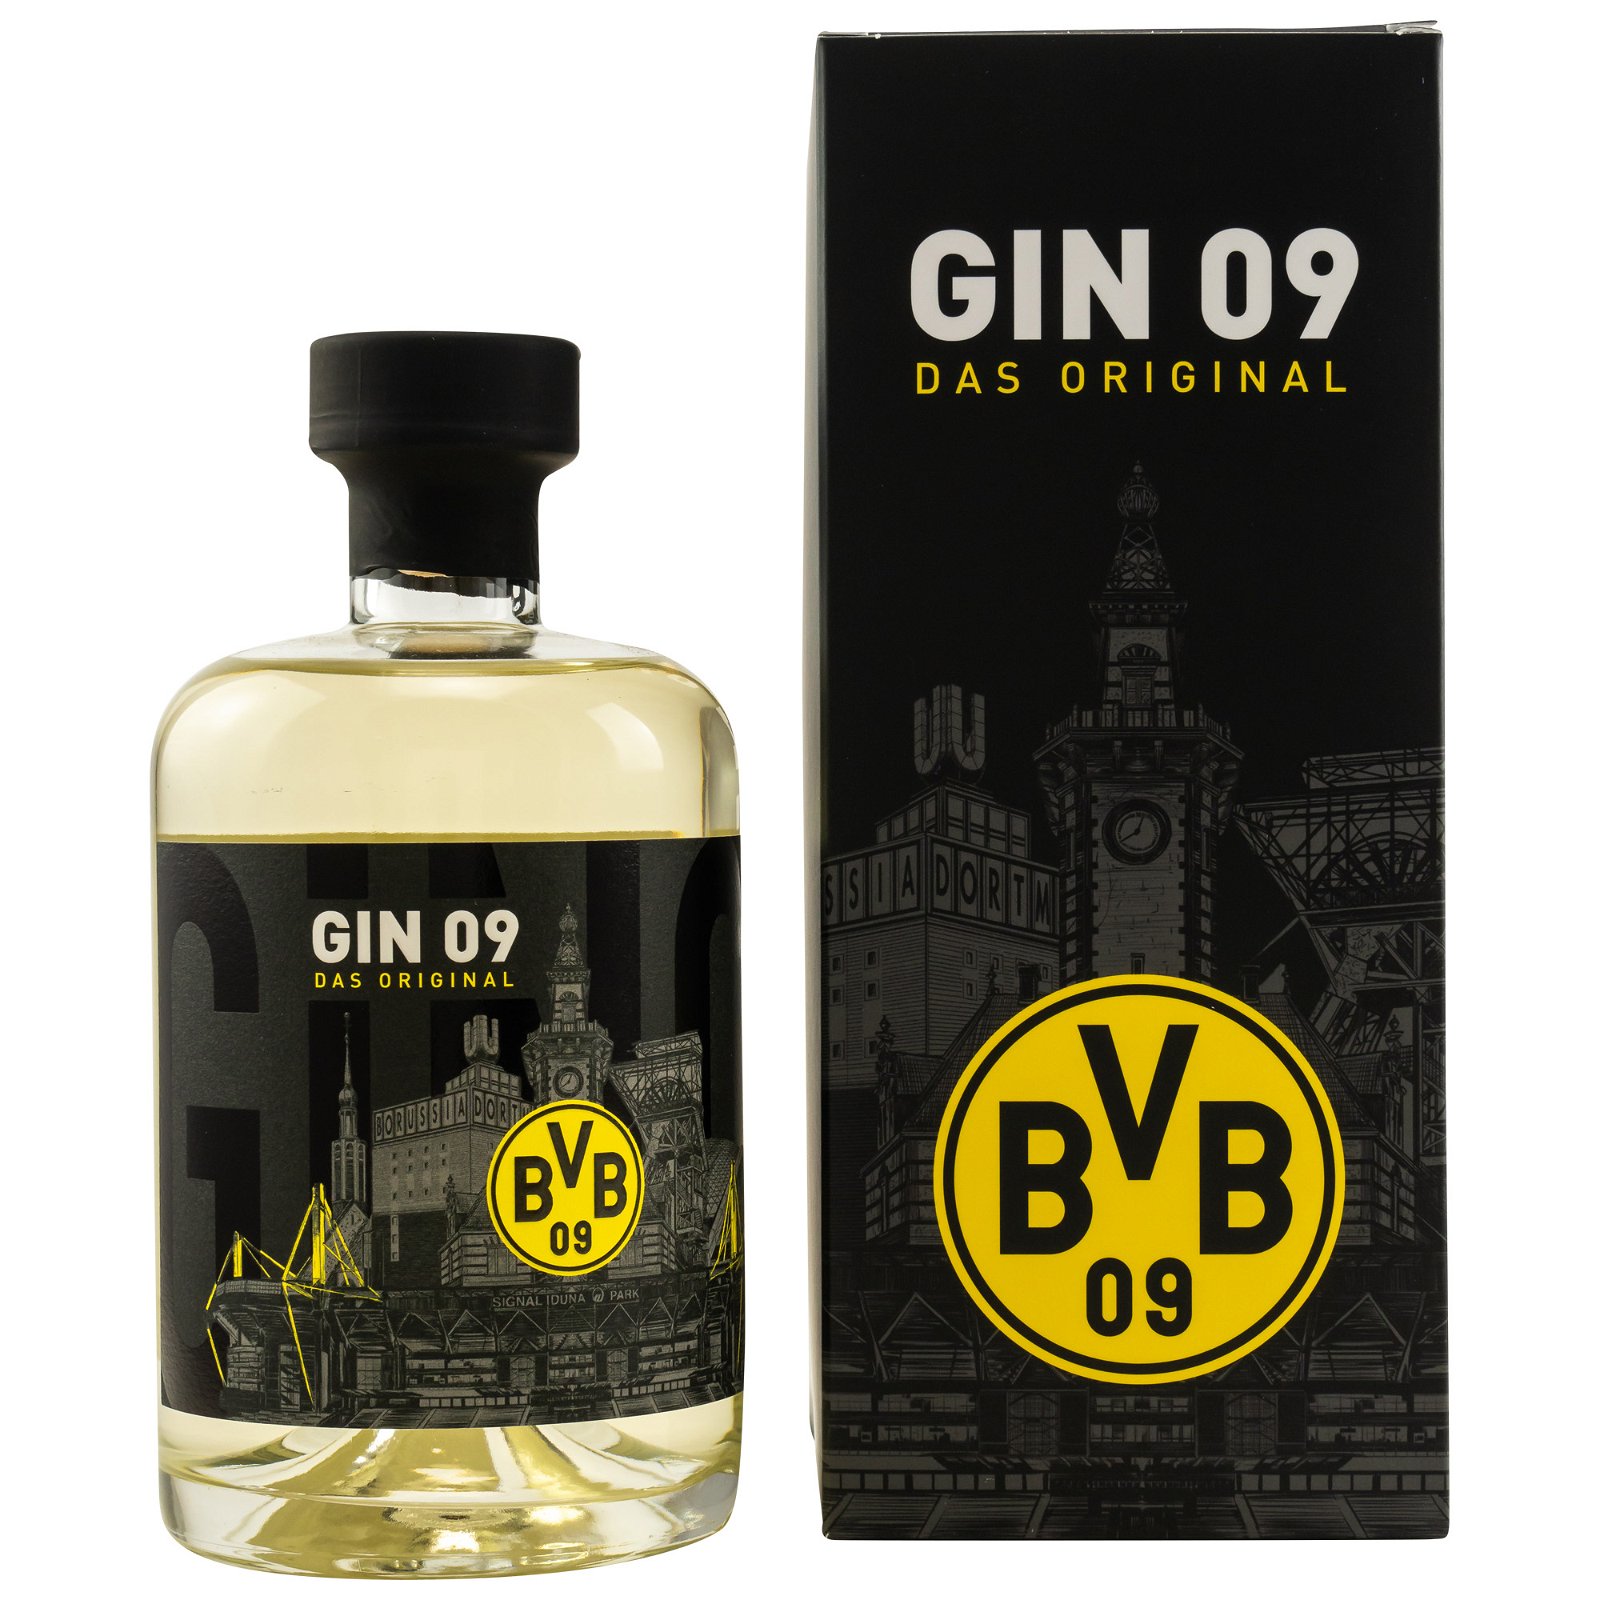 BVB Gin 09 Das Original Borussia Dortmund mit Geschenkverpackung